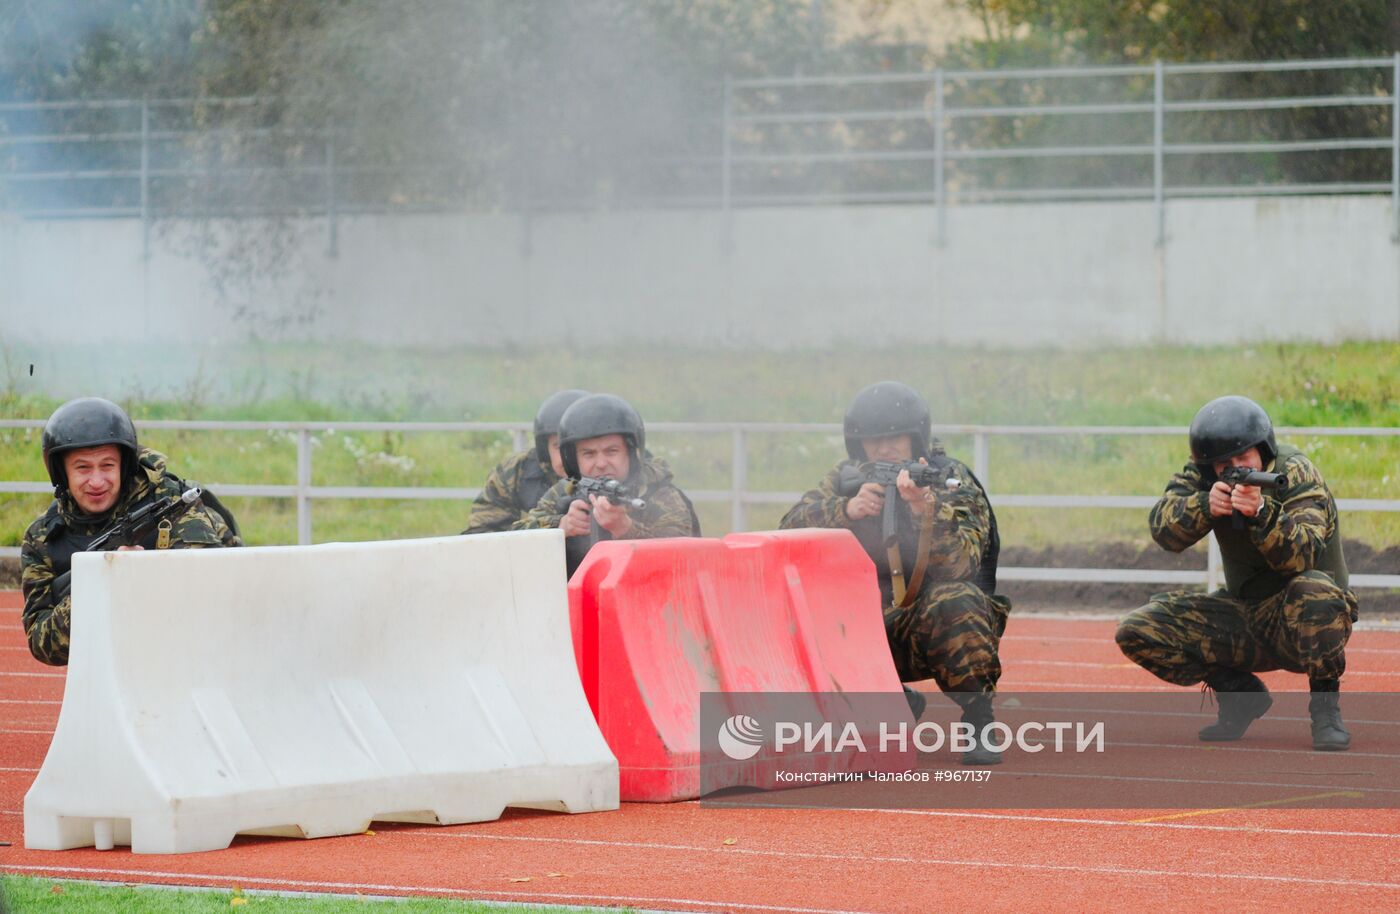 Спортивный праздник полиции в Великом Новгороде